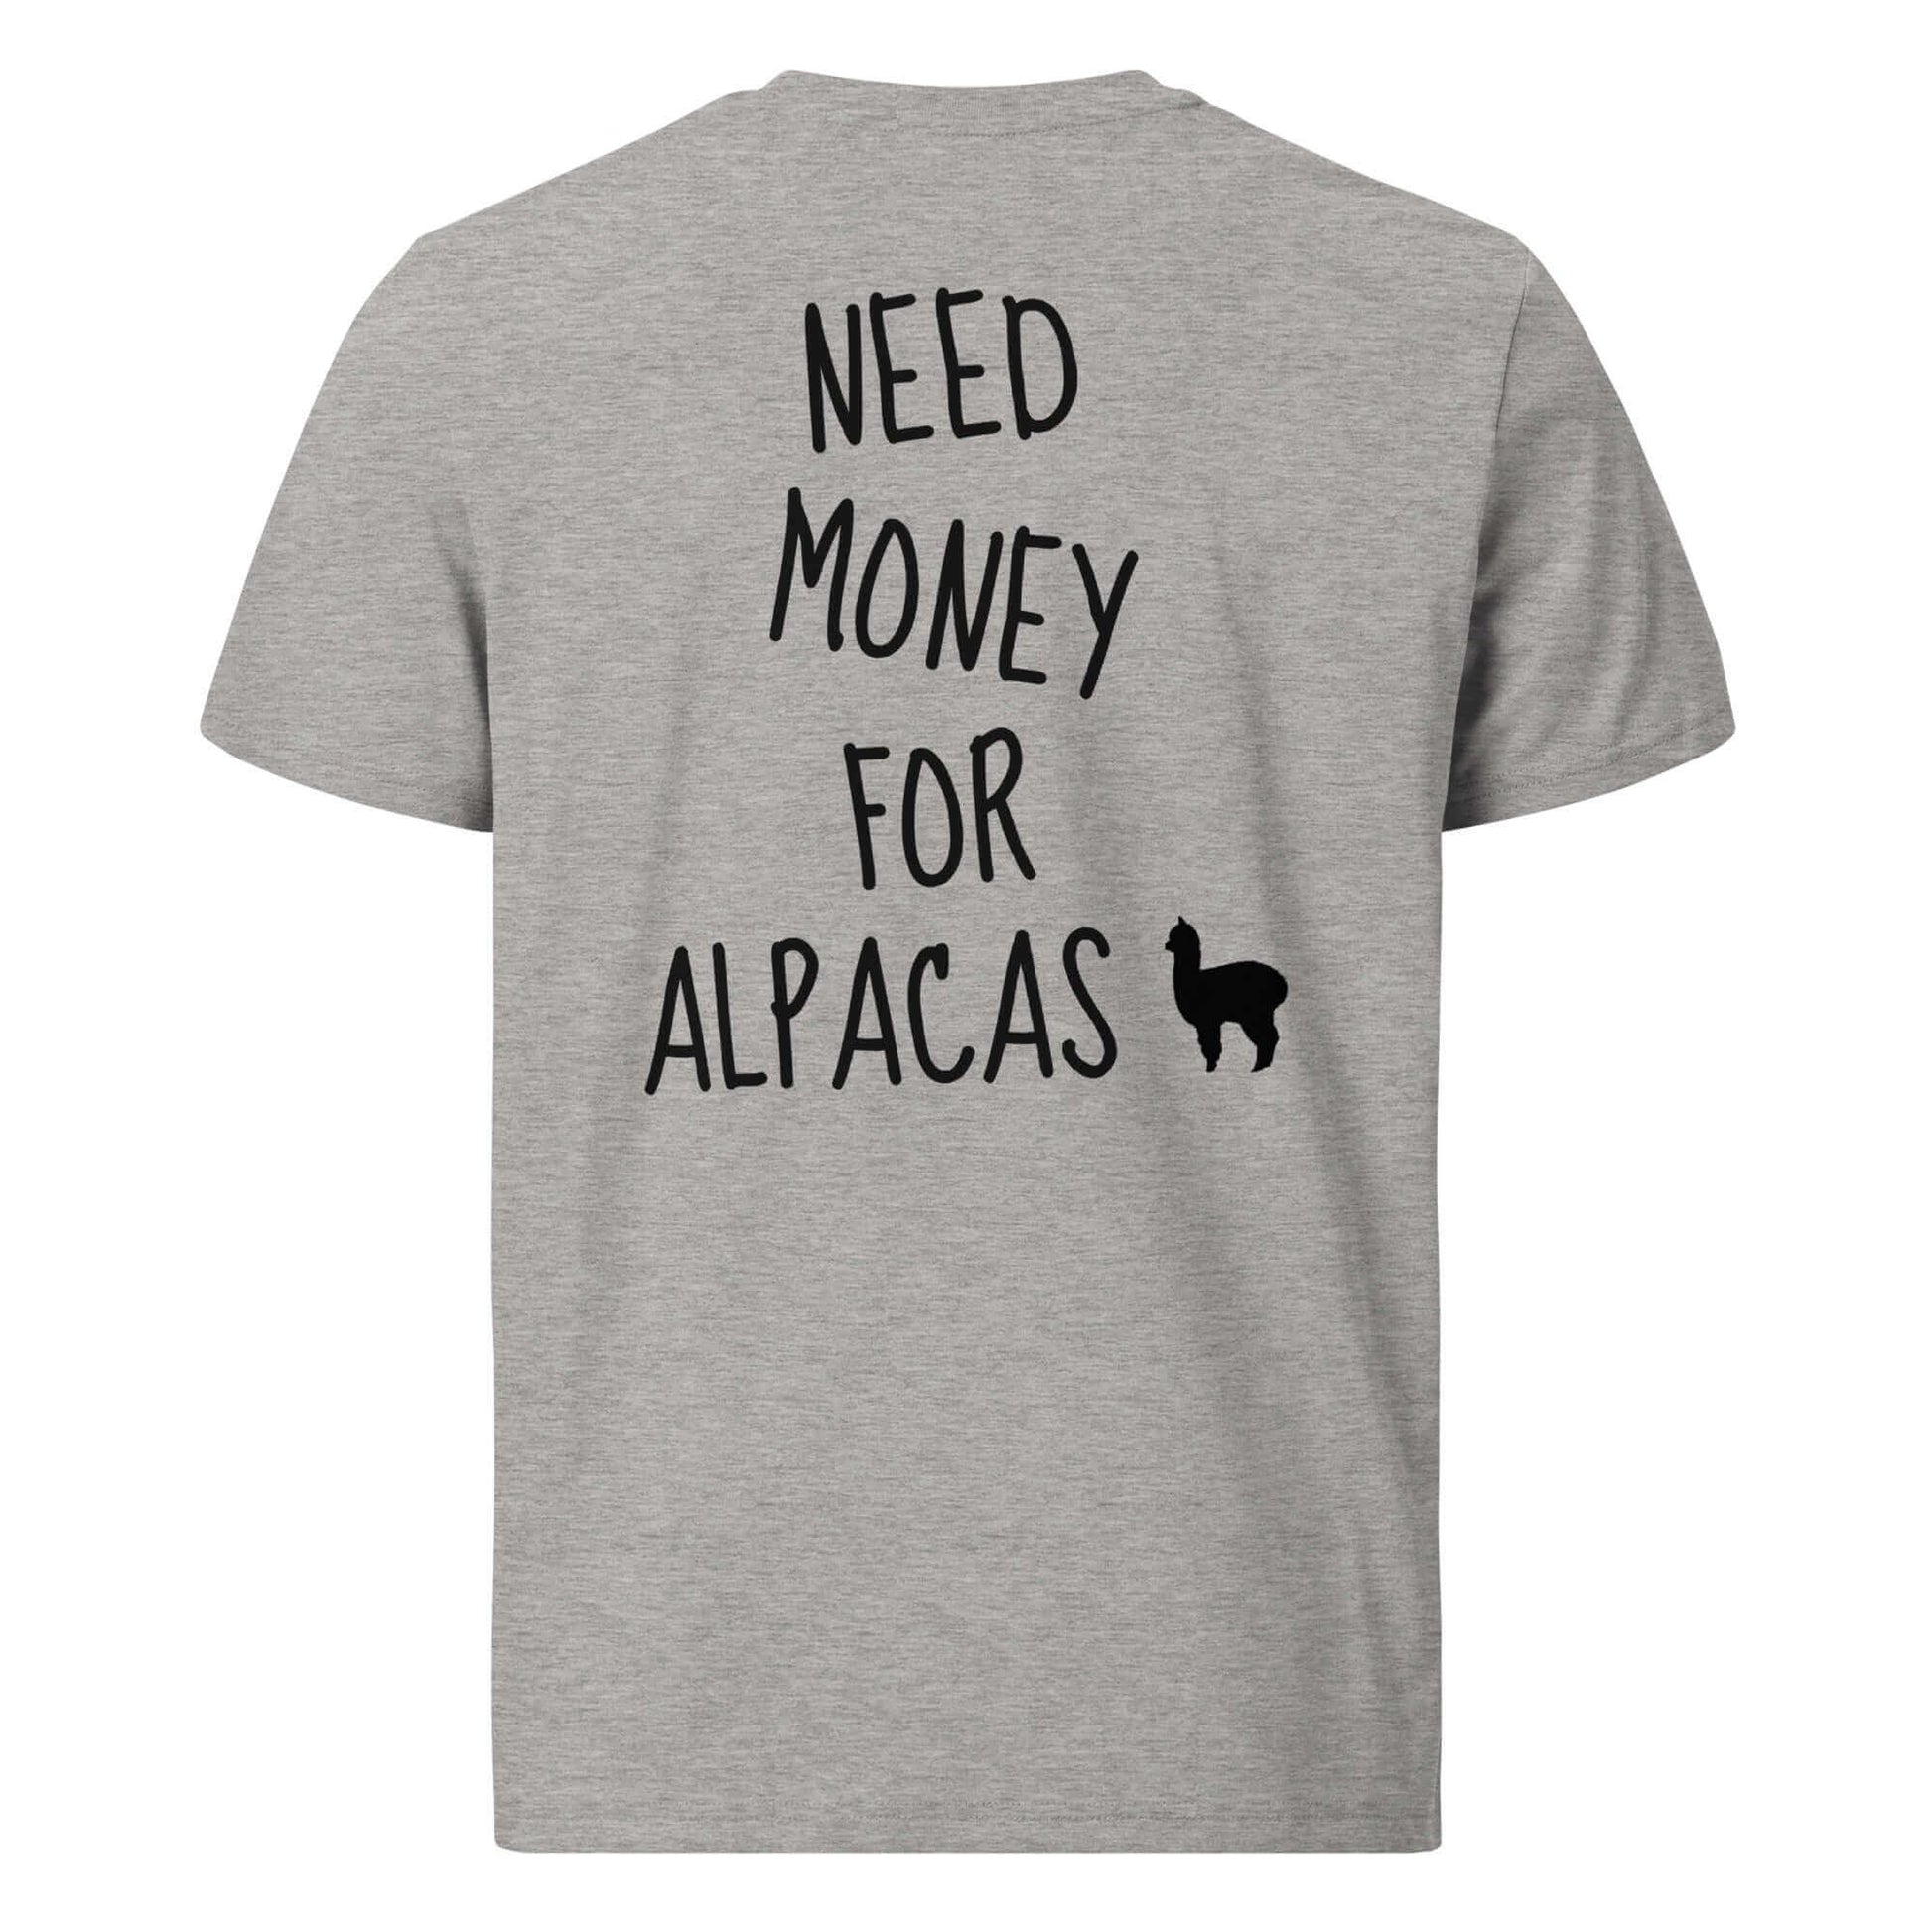 Humorvolles Alpaka-Shirt mit 'Need Money for Alpacas' Spruch und Alpaka-Silhouette für Tierliebhaber